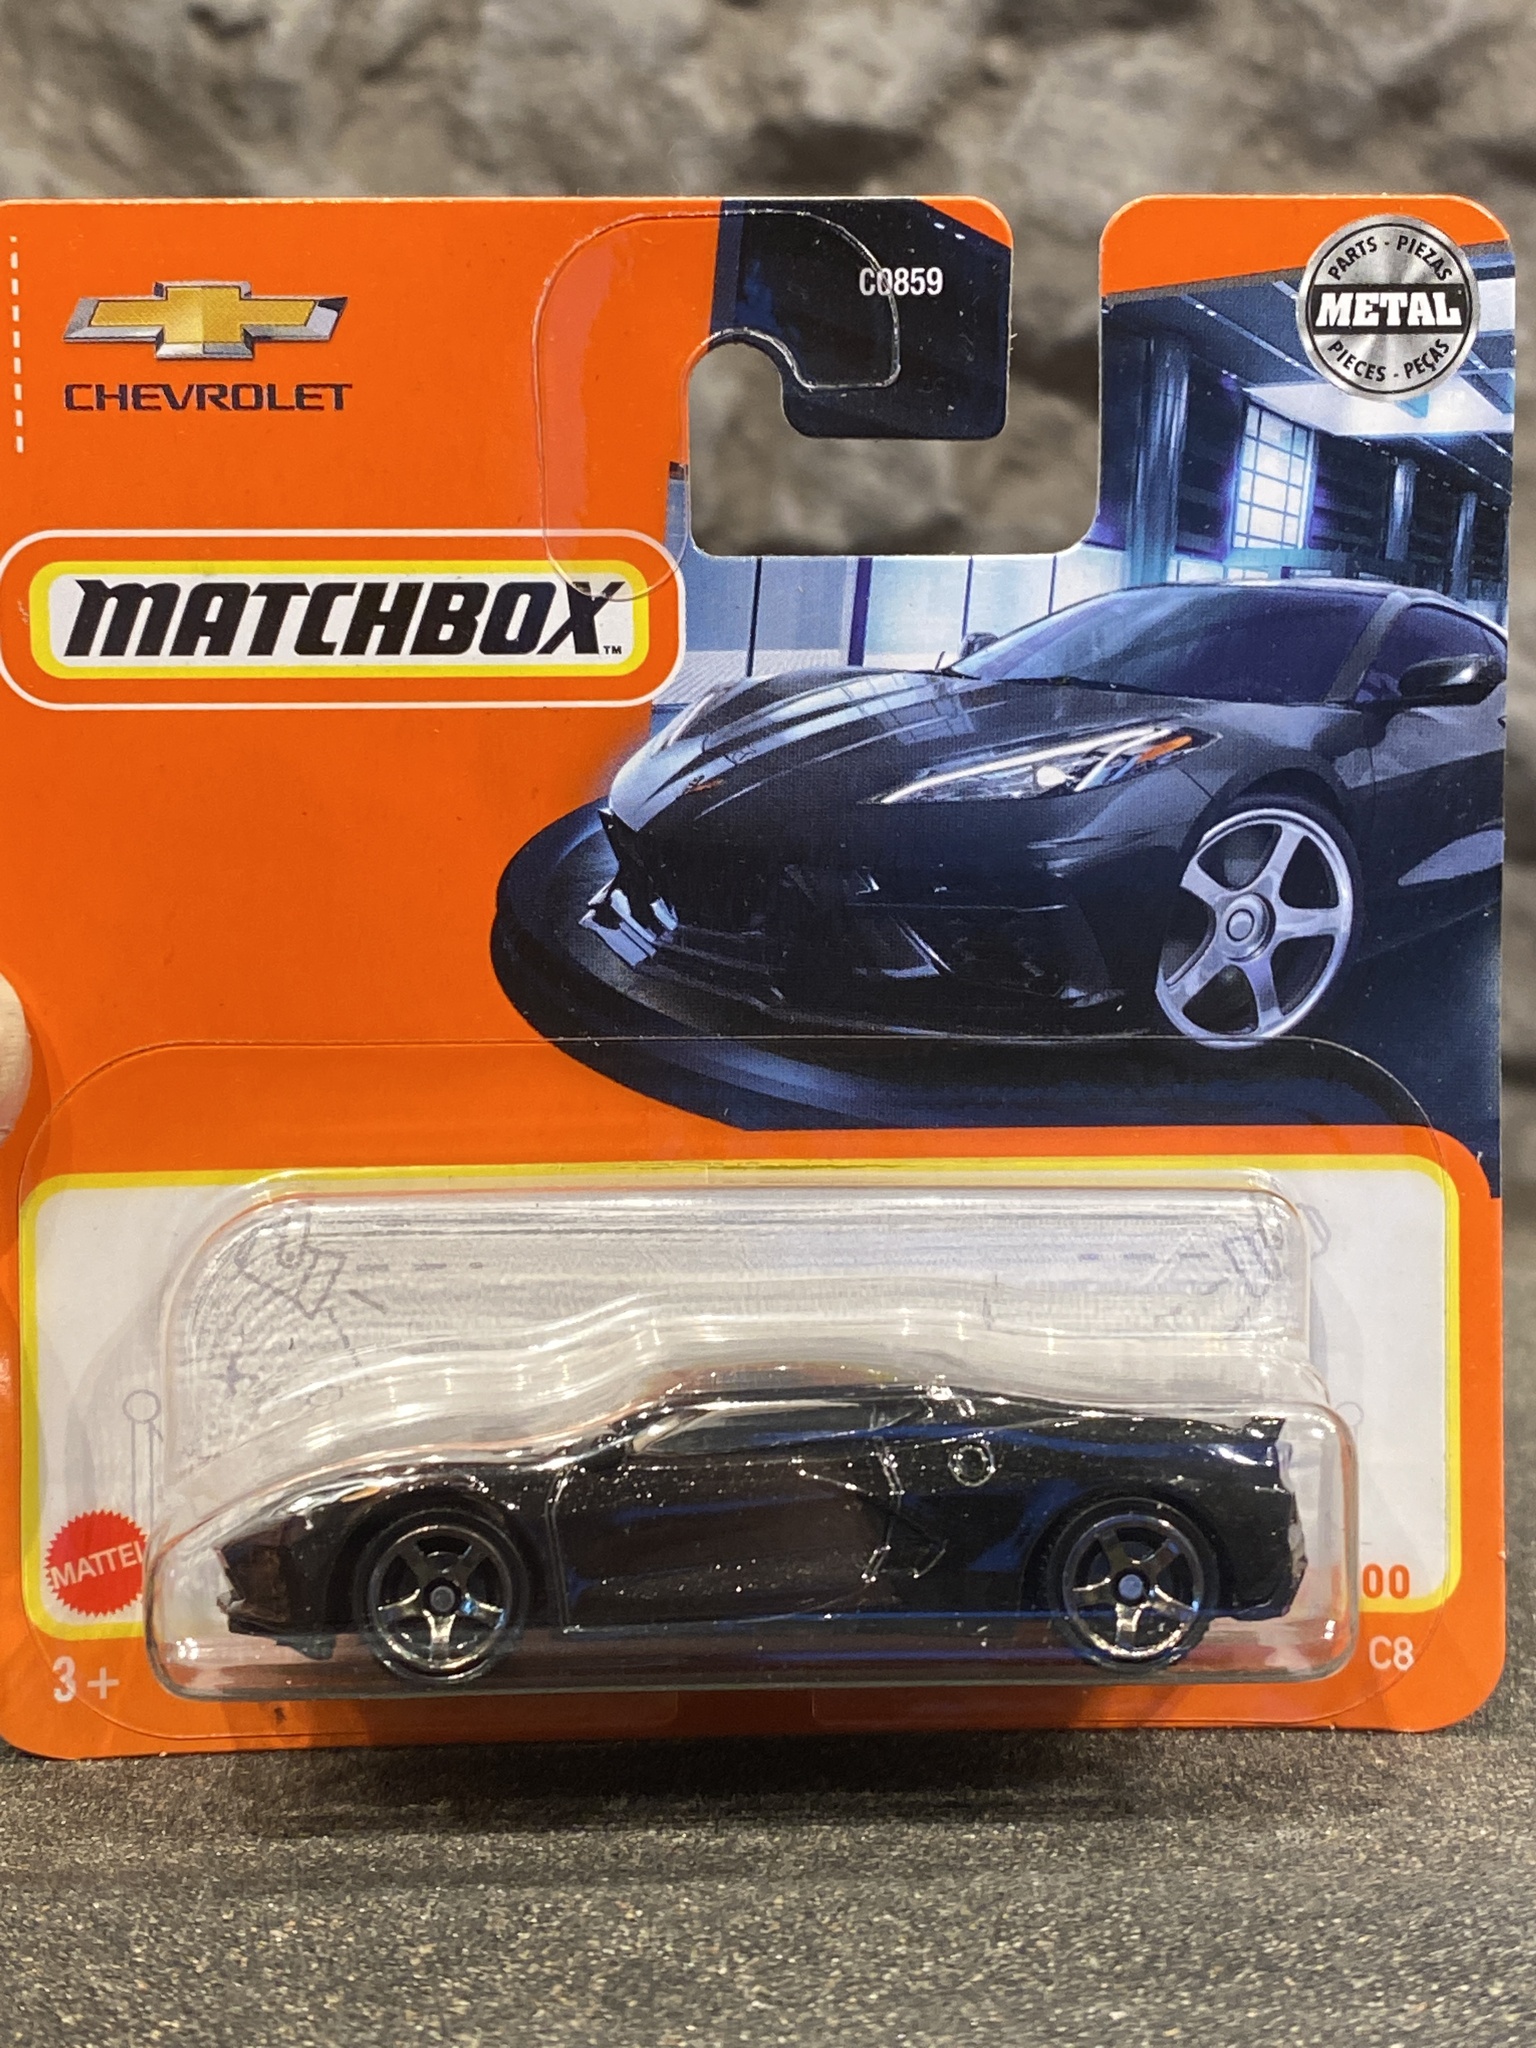 Skala 1/64 Matchbox -  Chevrolet Corvette C8 20'